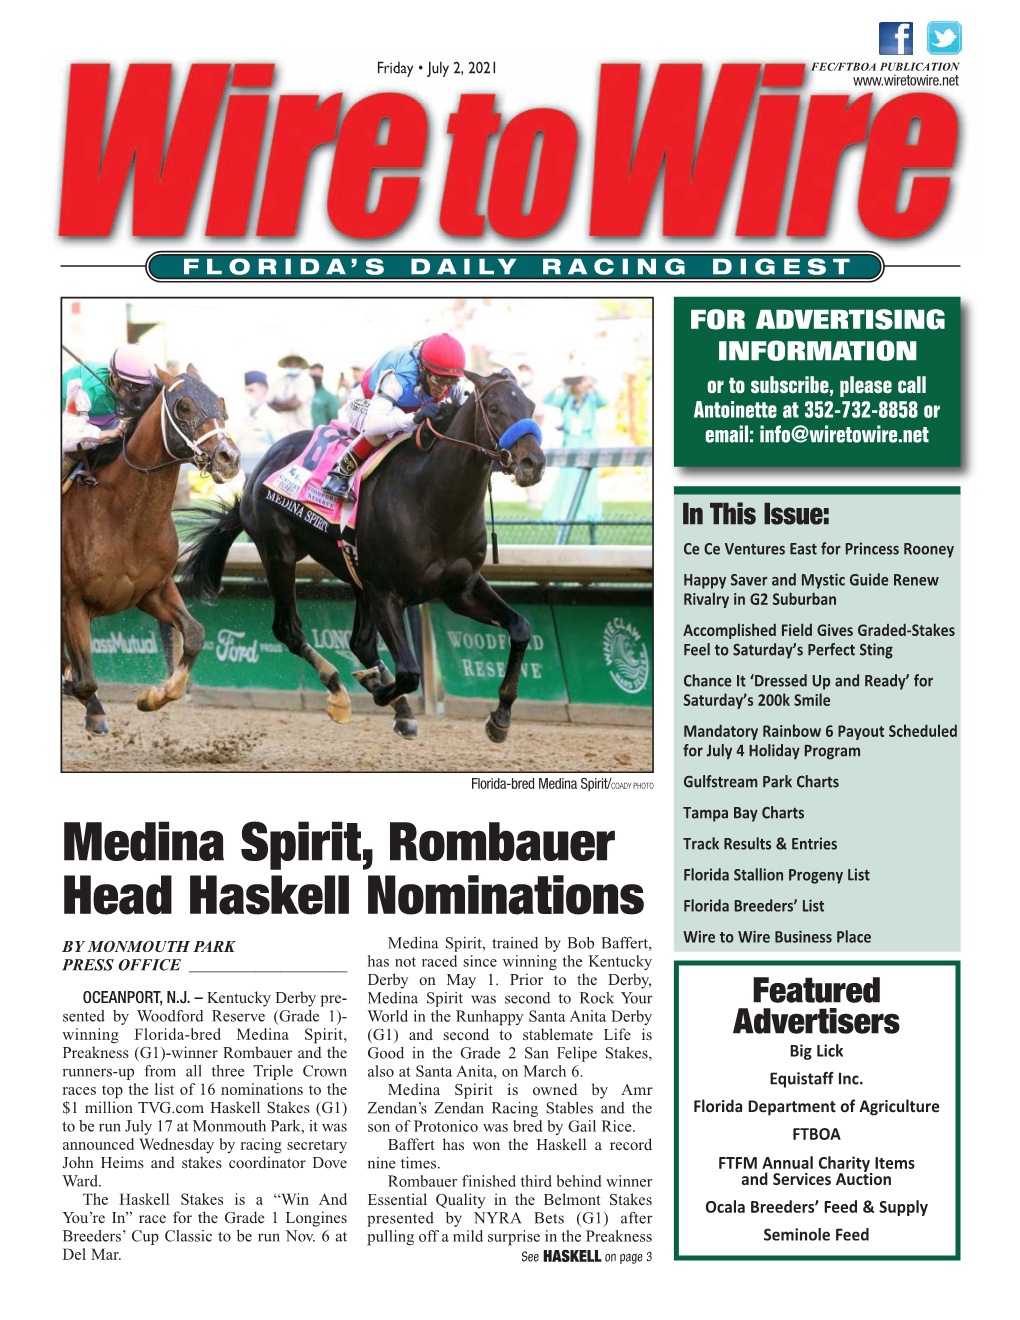 Medina Spirit, Rombauer Head Haskell Nominations